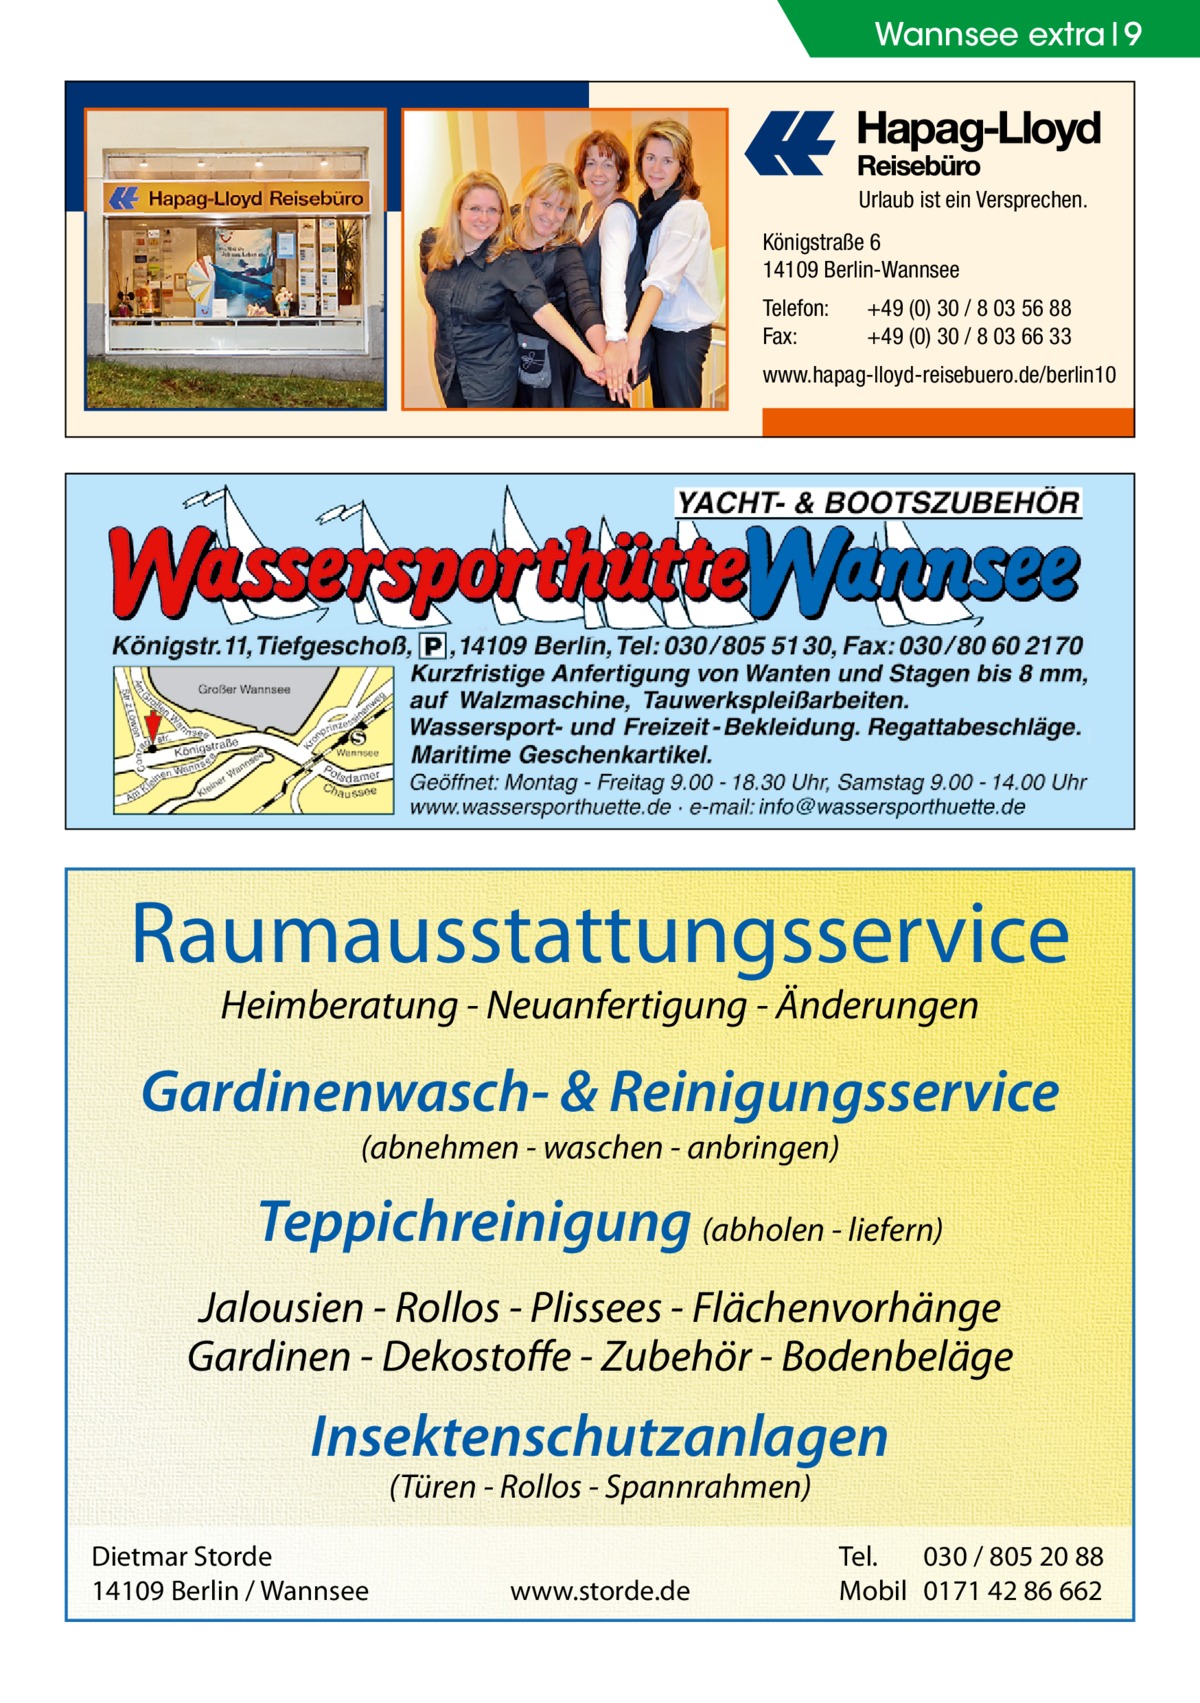 Wannsee extra 9  Urlaub ist ein Versprechen. Königstraße 6 14109 Berlin-Wannsee Telefon: Fax:  +49 (0) 30 / 8 03 56 88 +49 (0) 30 / 8 03 66 33  www.hapag-lloyd-reisebuero.de/berlin10  Raumausstattungsservice Heimberatung - Neuanfertigung - Änderungen  Gardinenwasch- & Reinigungsservice (abnehmen - waschen - anbringen)  Teppichreinigung (abholen - liefern) Jalousien - Rollos - Plissees - Flächenvorhänge Gardinen - Dekostoffe - Zubehör - Bodenbeläge  Insektenschutzanlagen (Türen - Rollos - Spannrahmen)  Dietmar Storde 14109 Berlin / Wannsee  www.storde.de  Tel. 030 / 805 20 88 Mobil 0171 42 86 662